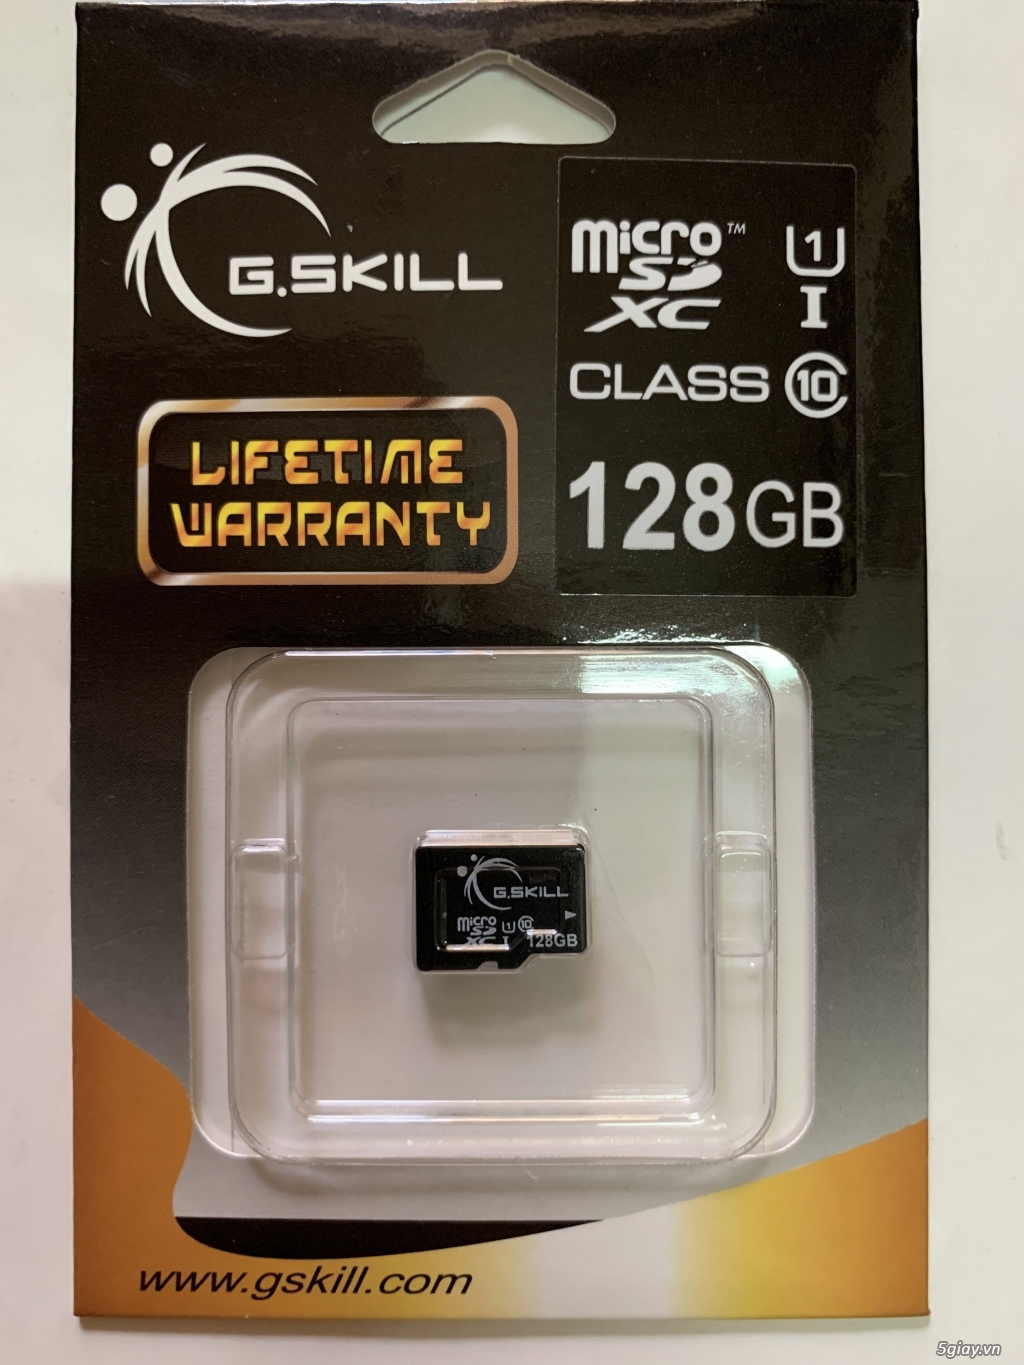 Thẻ nhớ micro sd G.Skill 128GB class 10, chính hãng usa, end 23h00-25/02/2020